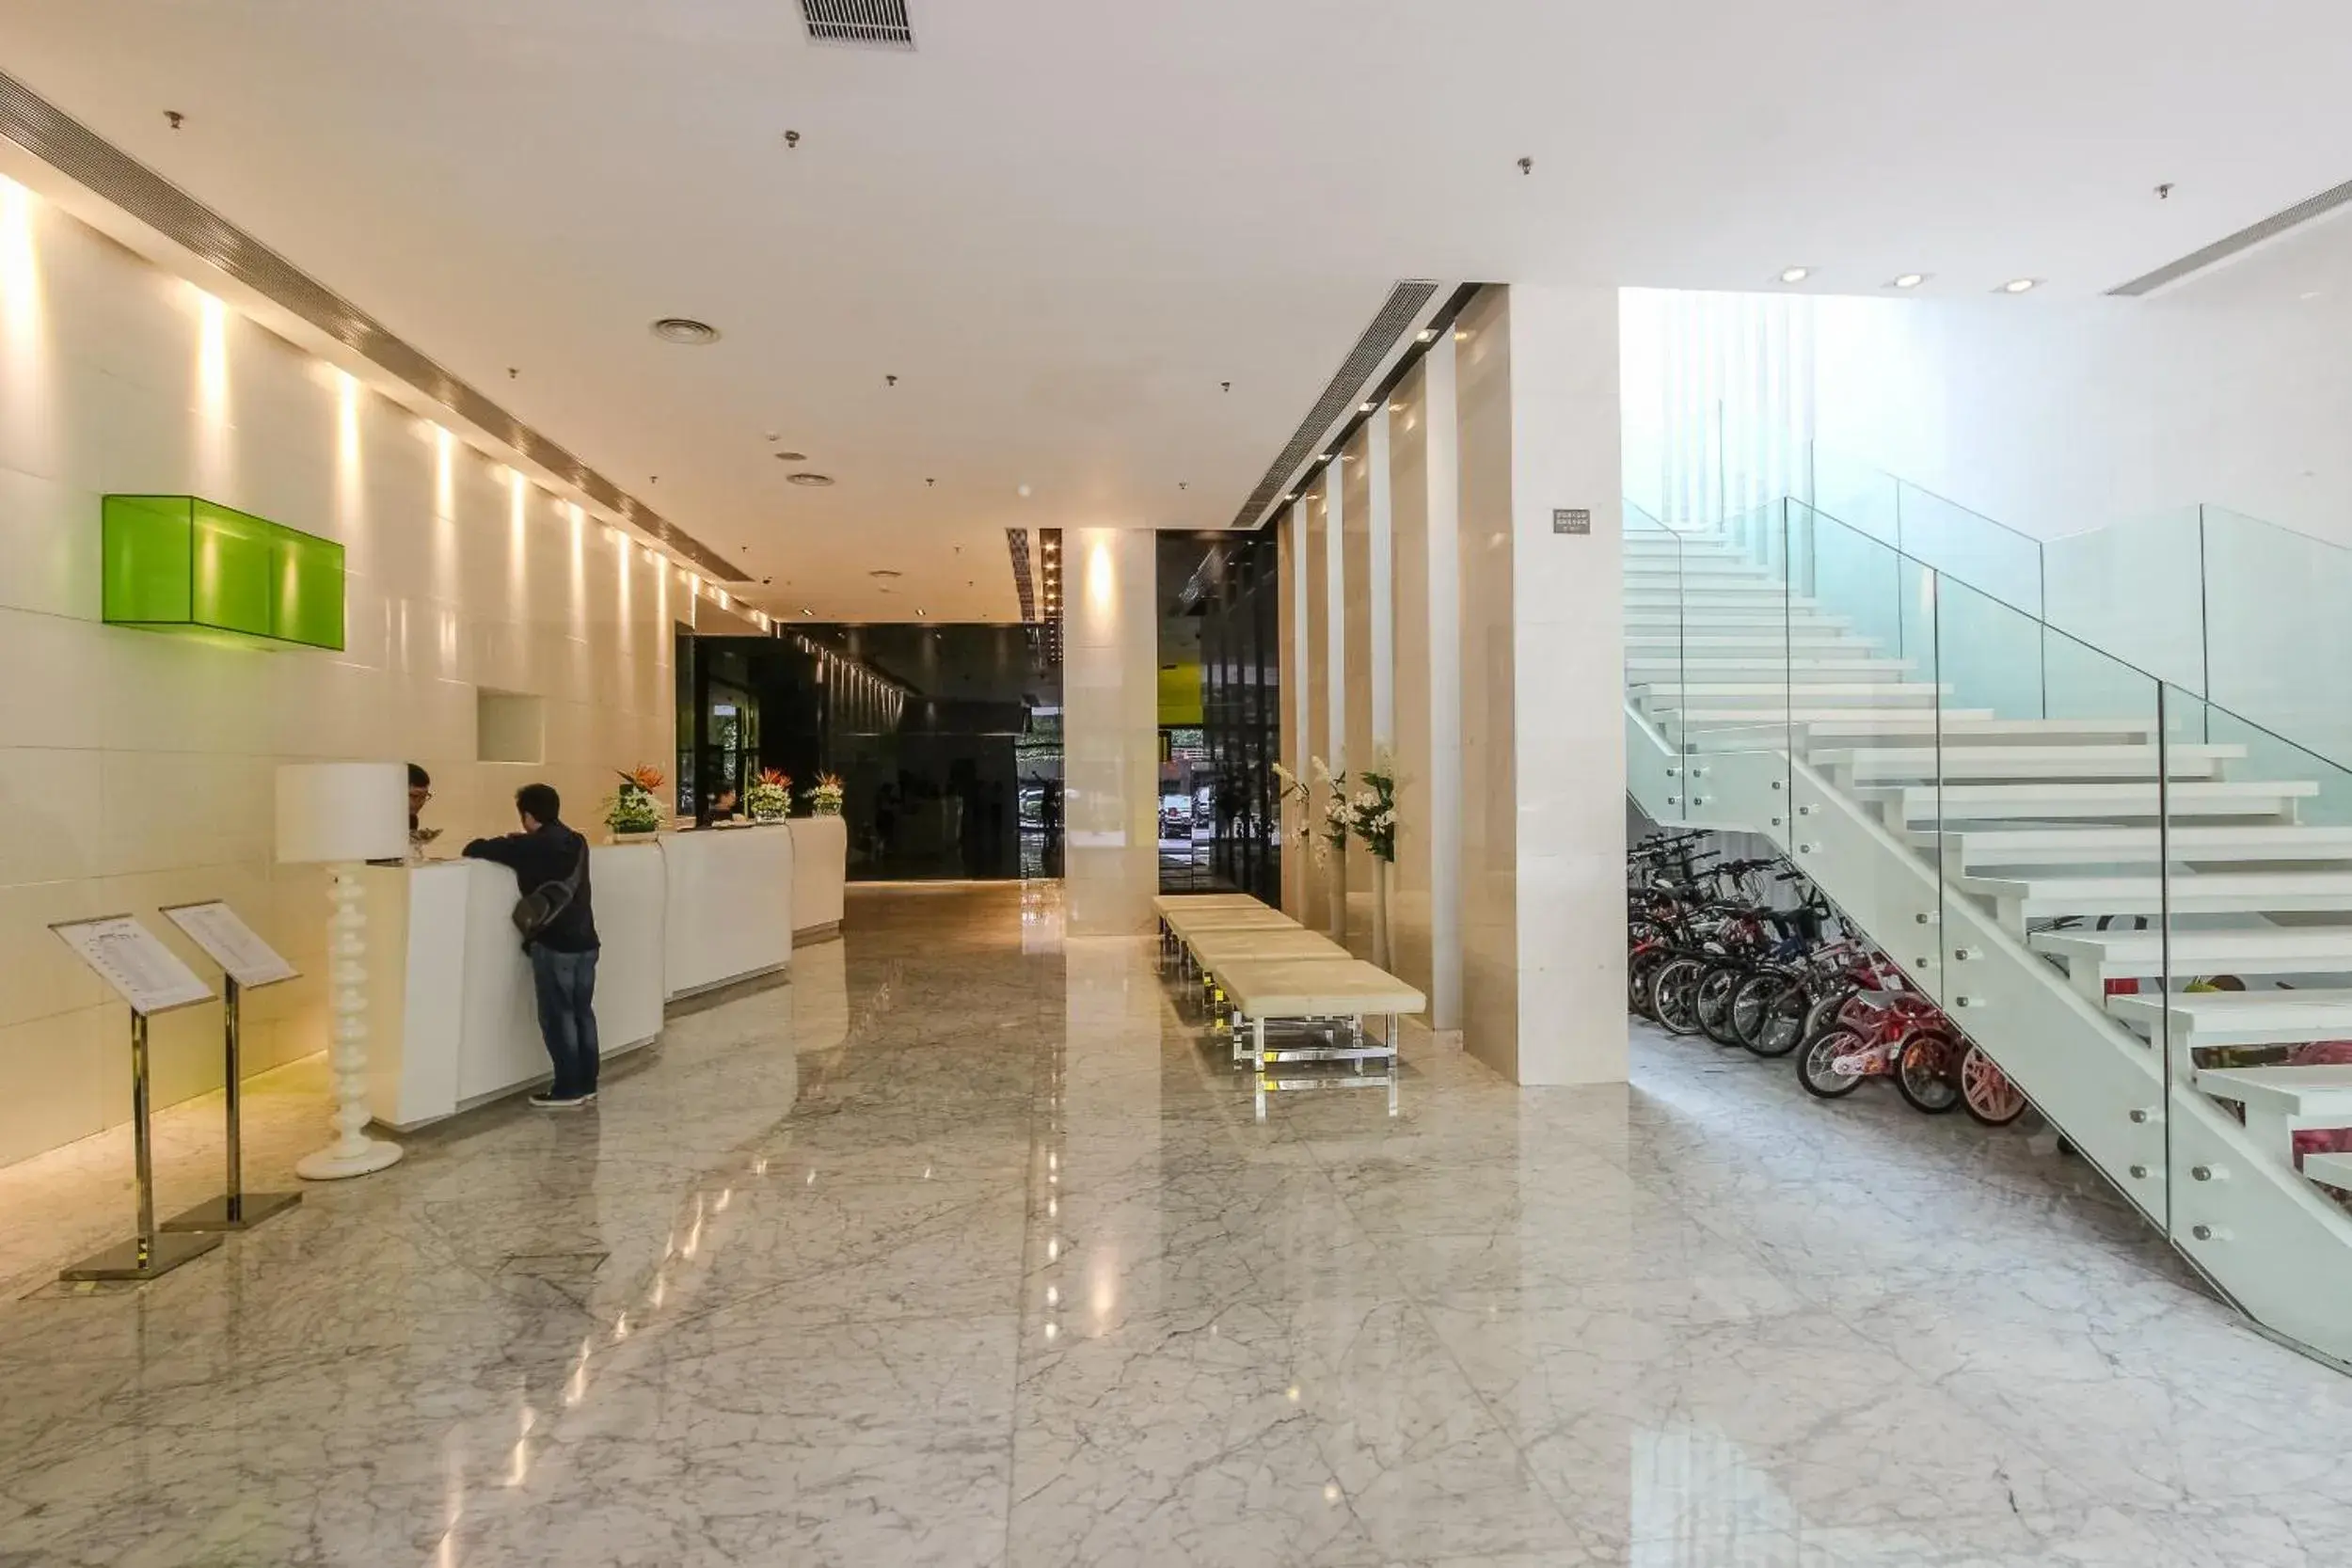 Lobby or reception, Lobby/Reception in Yuwa Hotel